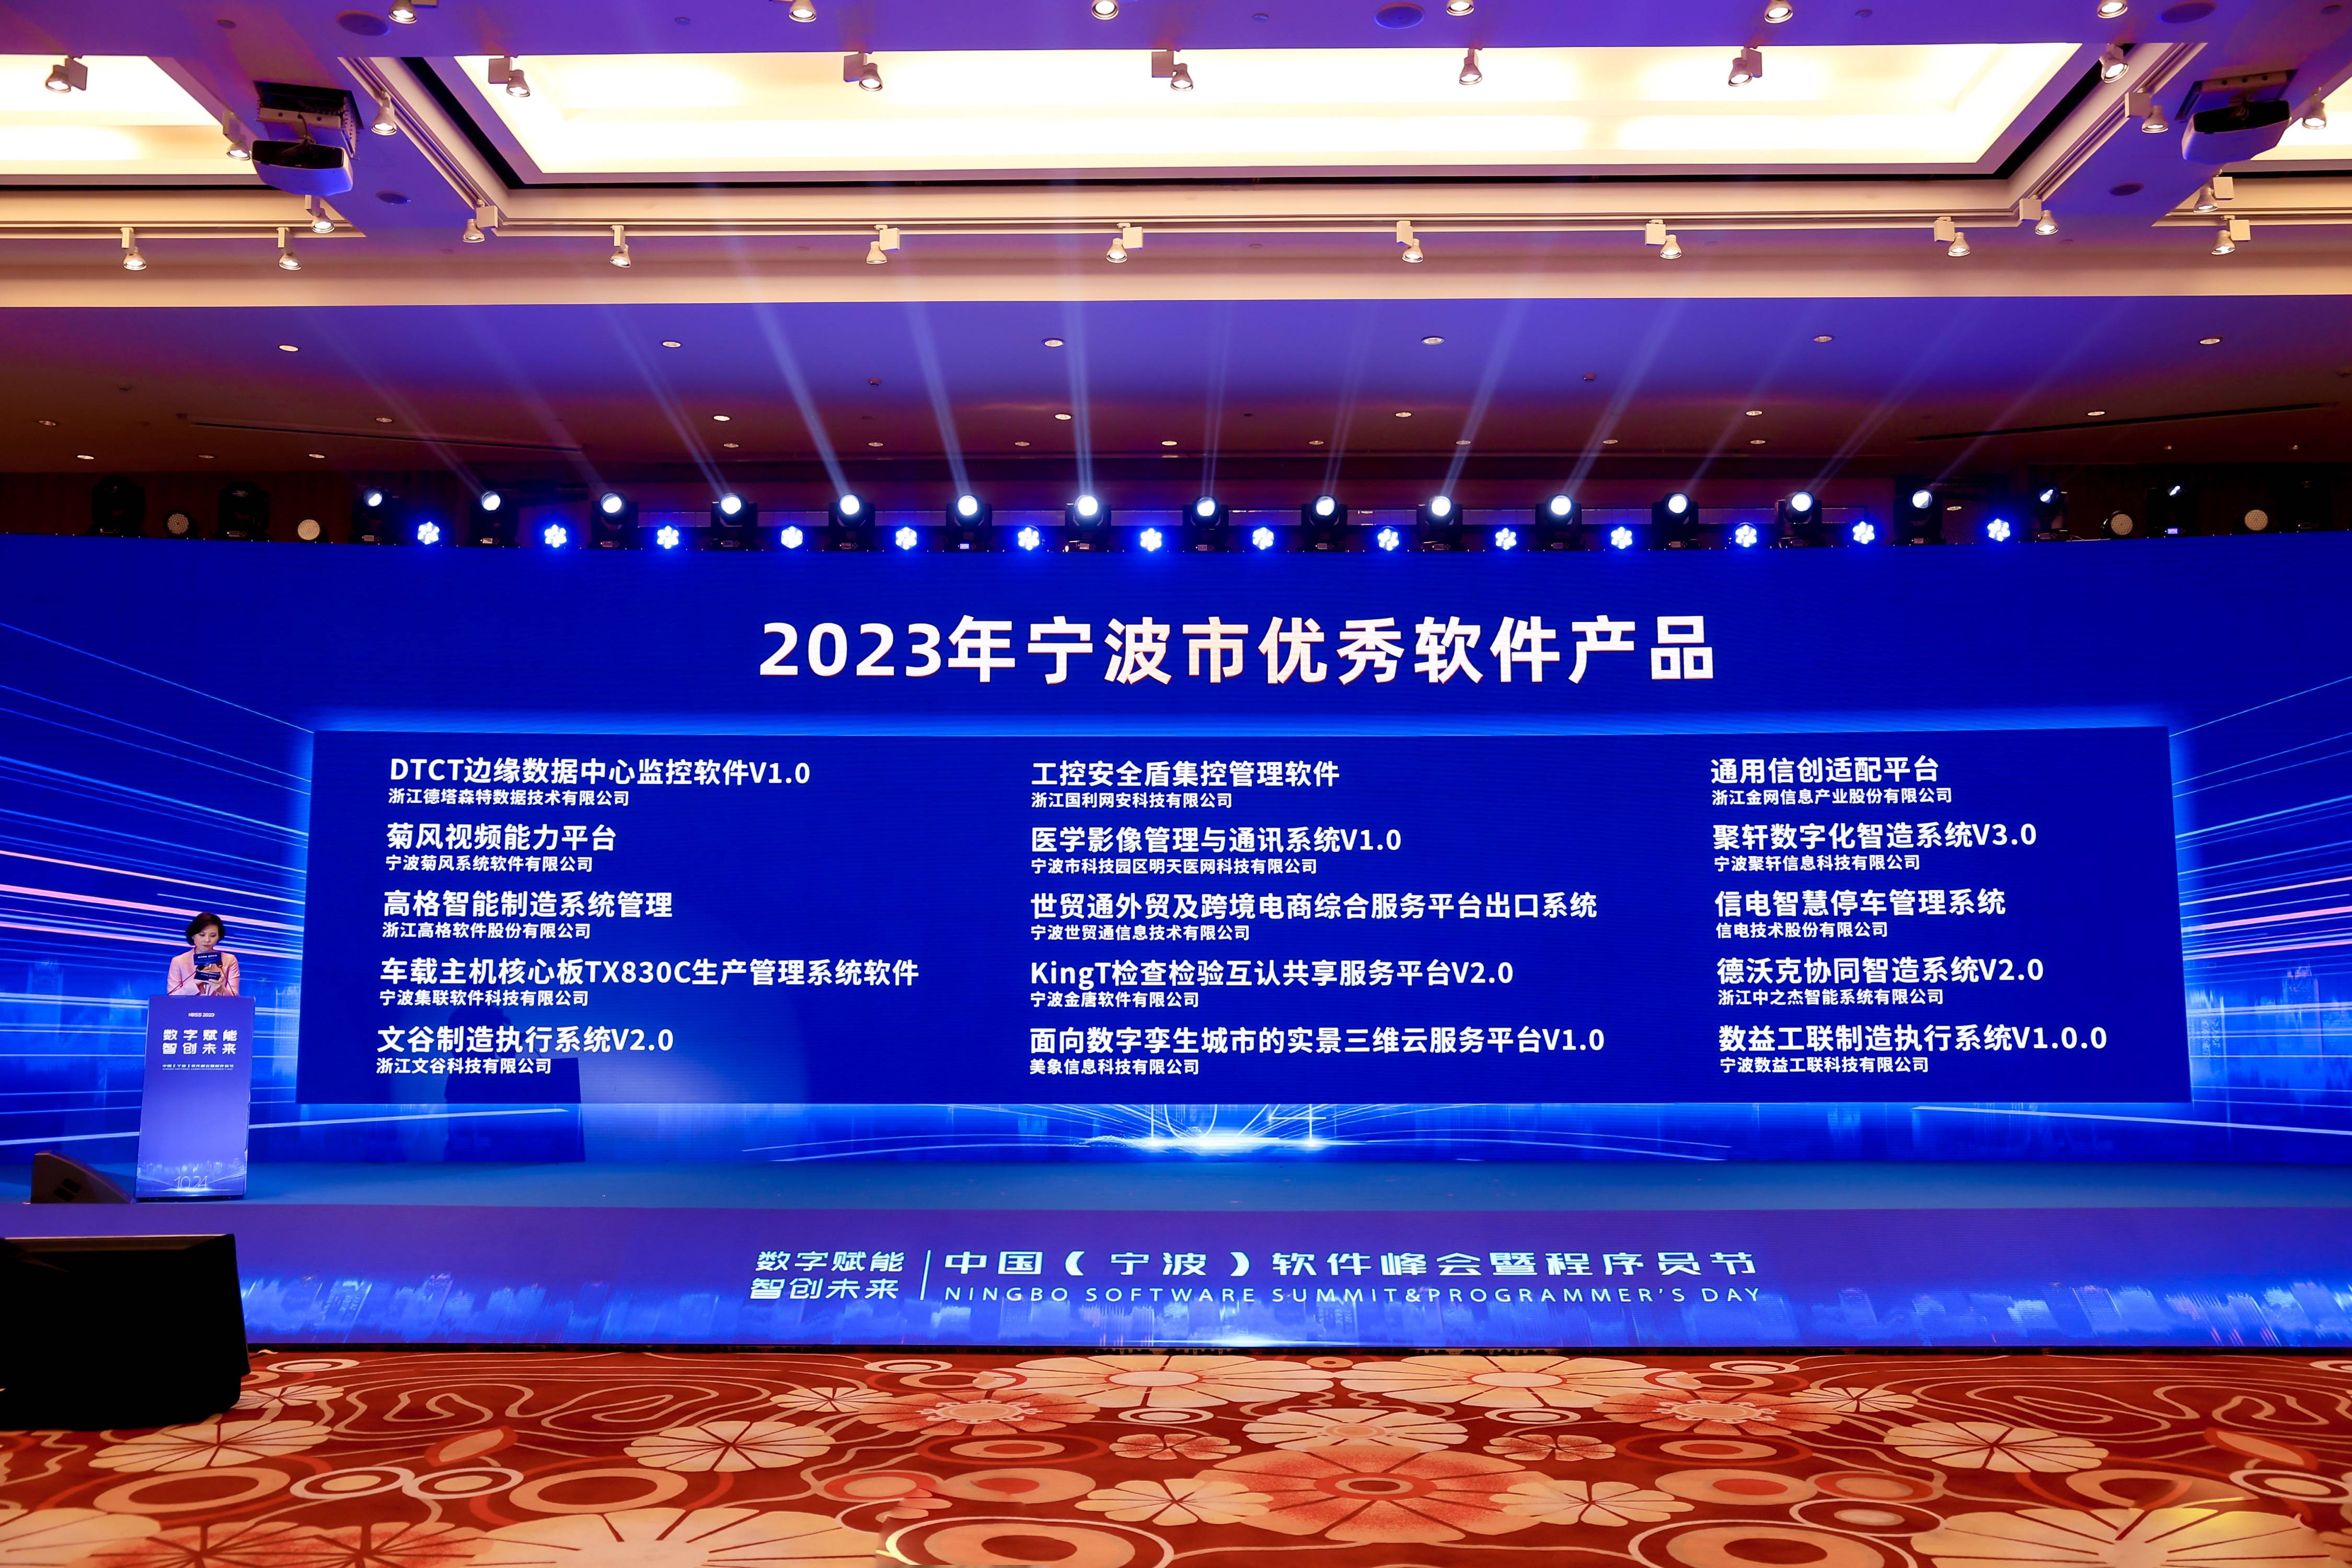 宁波聚轩信息科技有限公司荣获2023年宁波市优秀软件产品奖